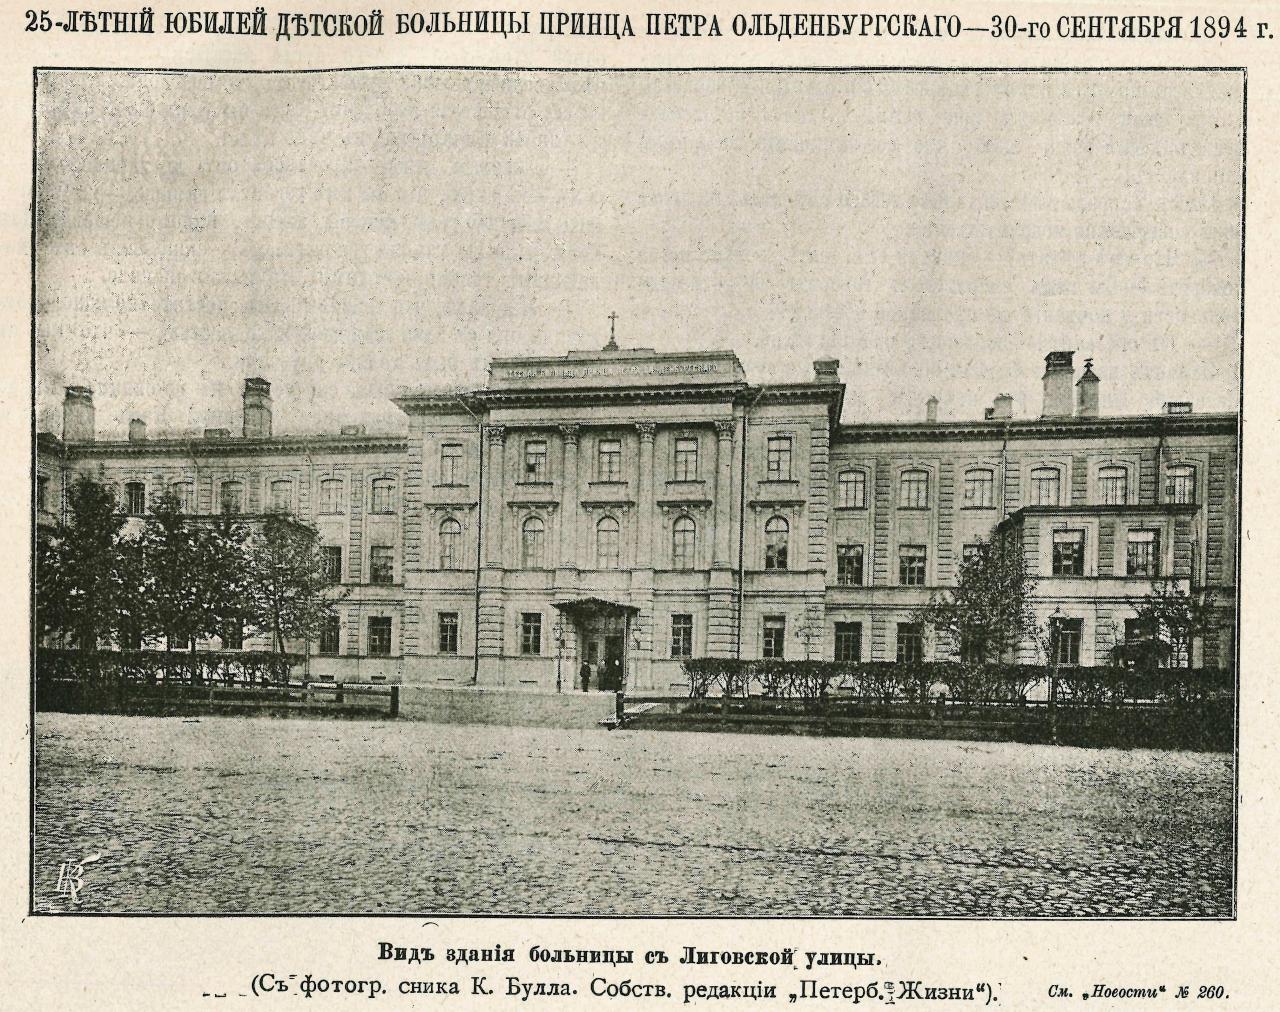 Детская больница принца Петра Ольденбургского